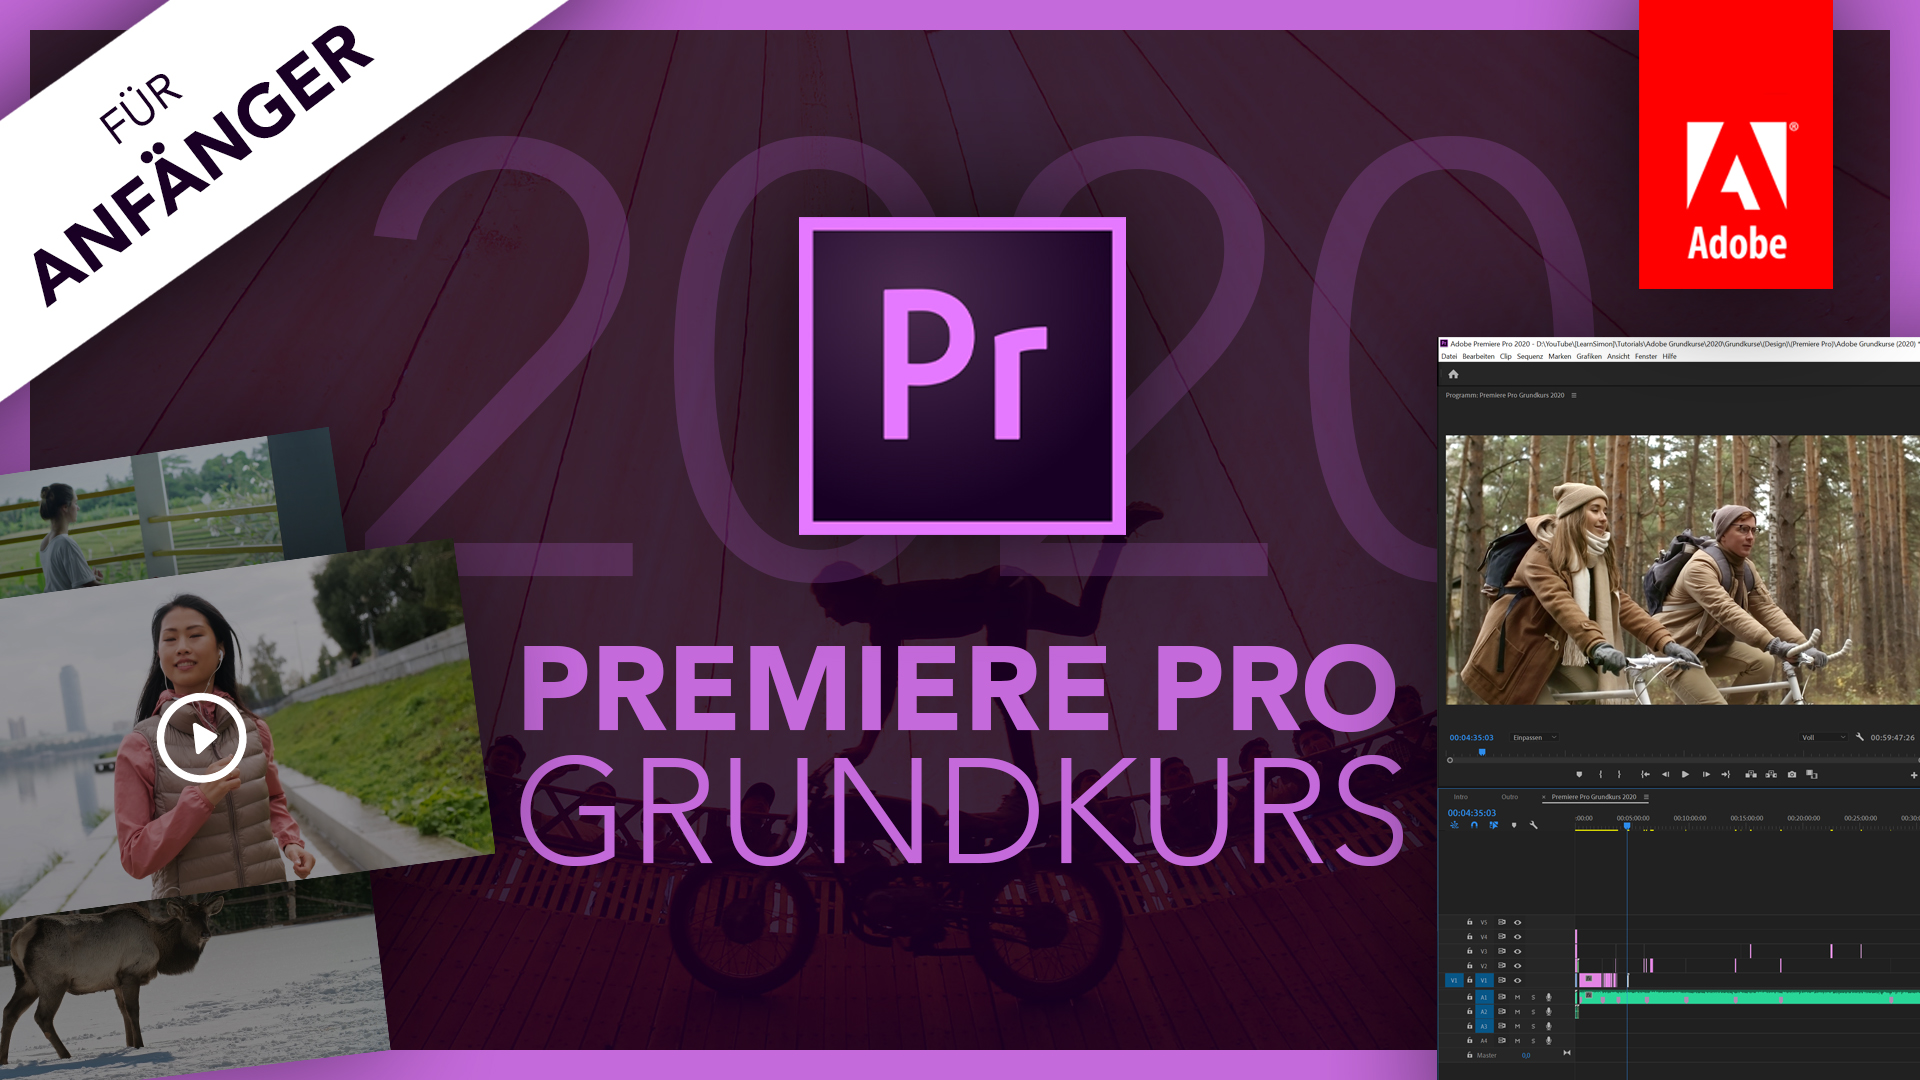 Adobe Premiere Pro 2020 (Grundkurs für Anfänger) Deutsch